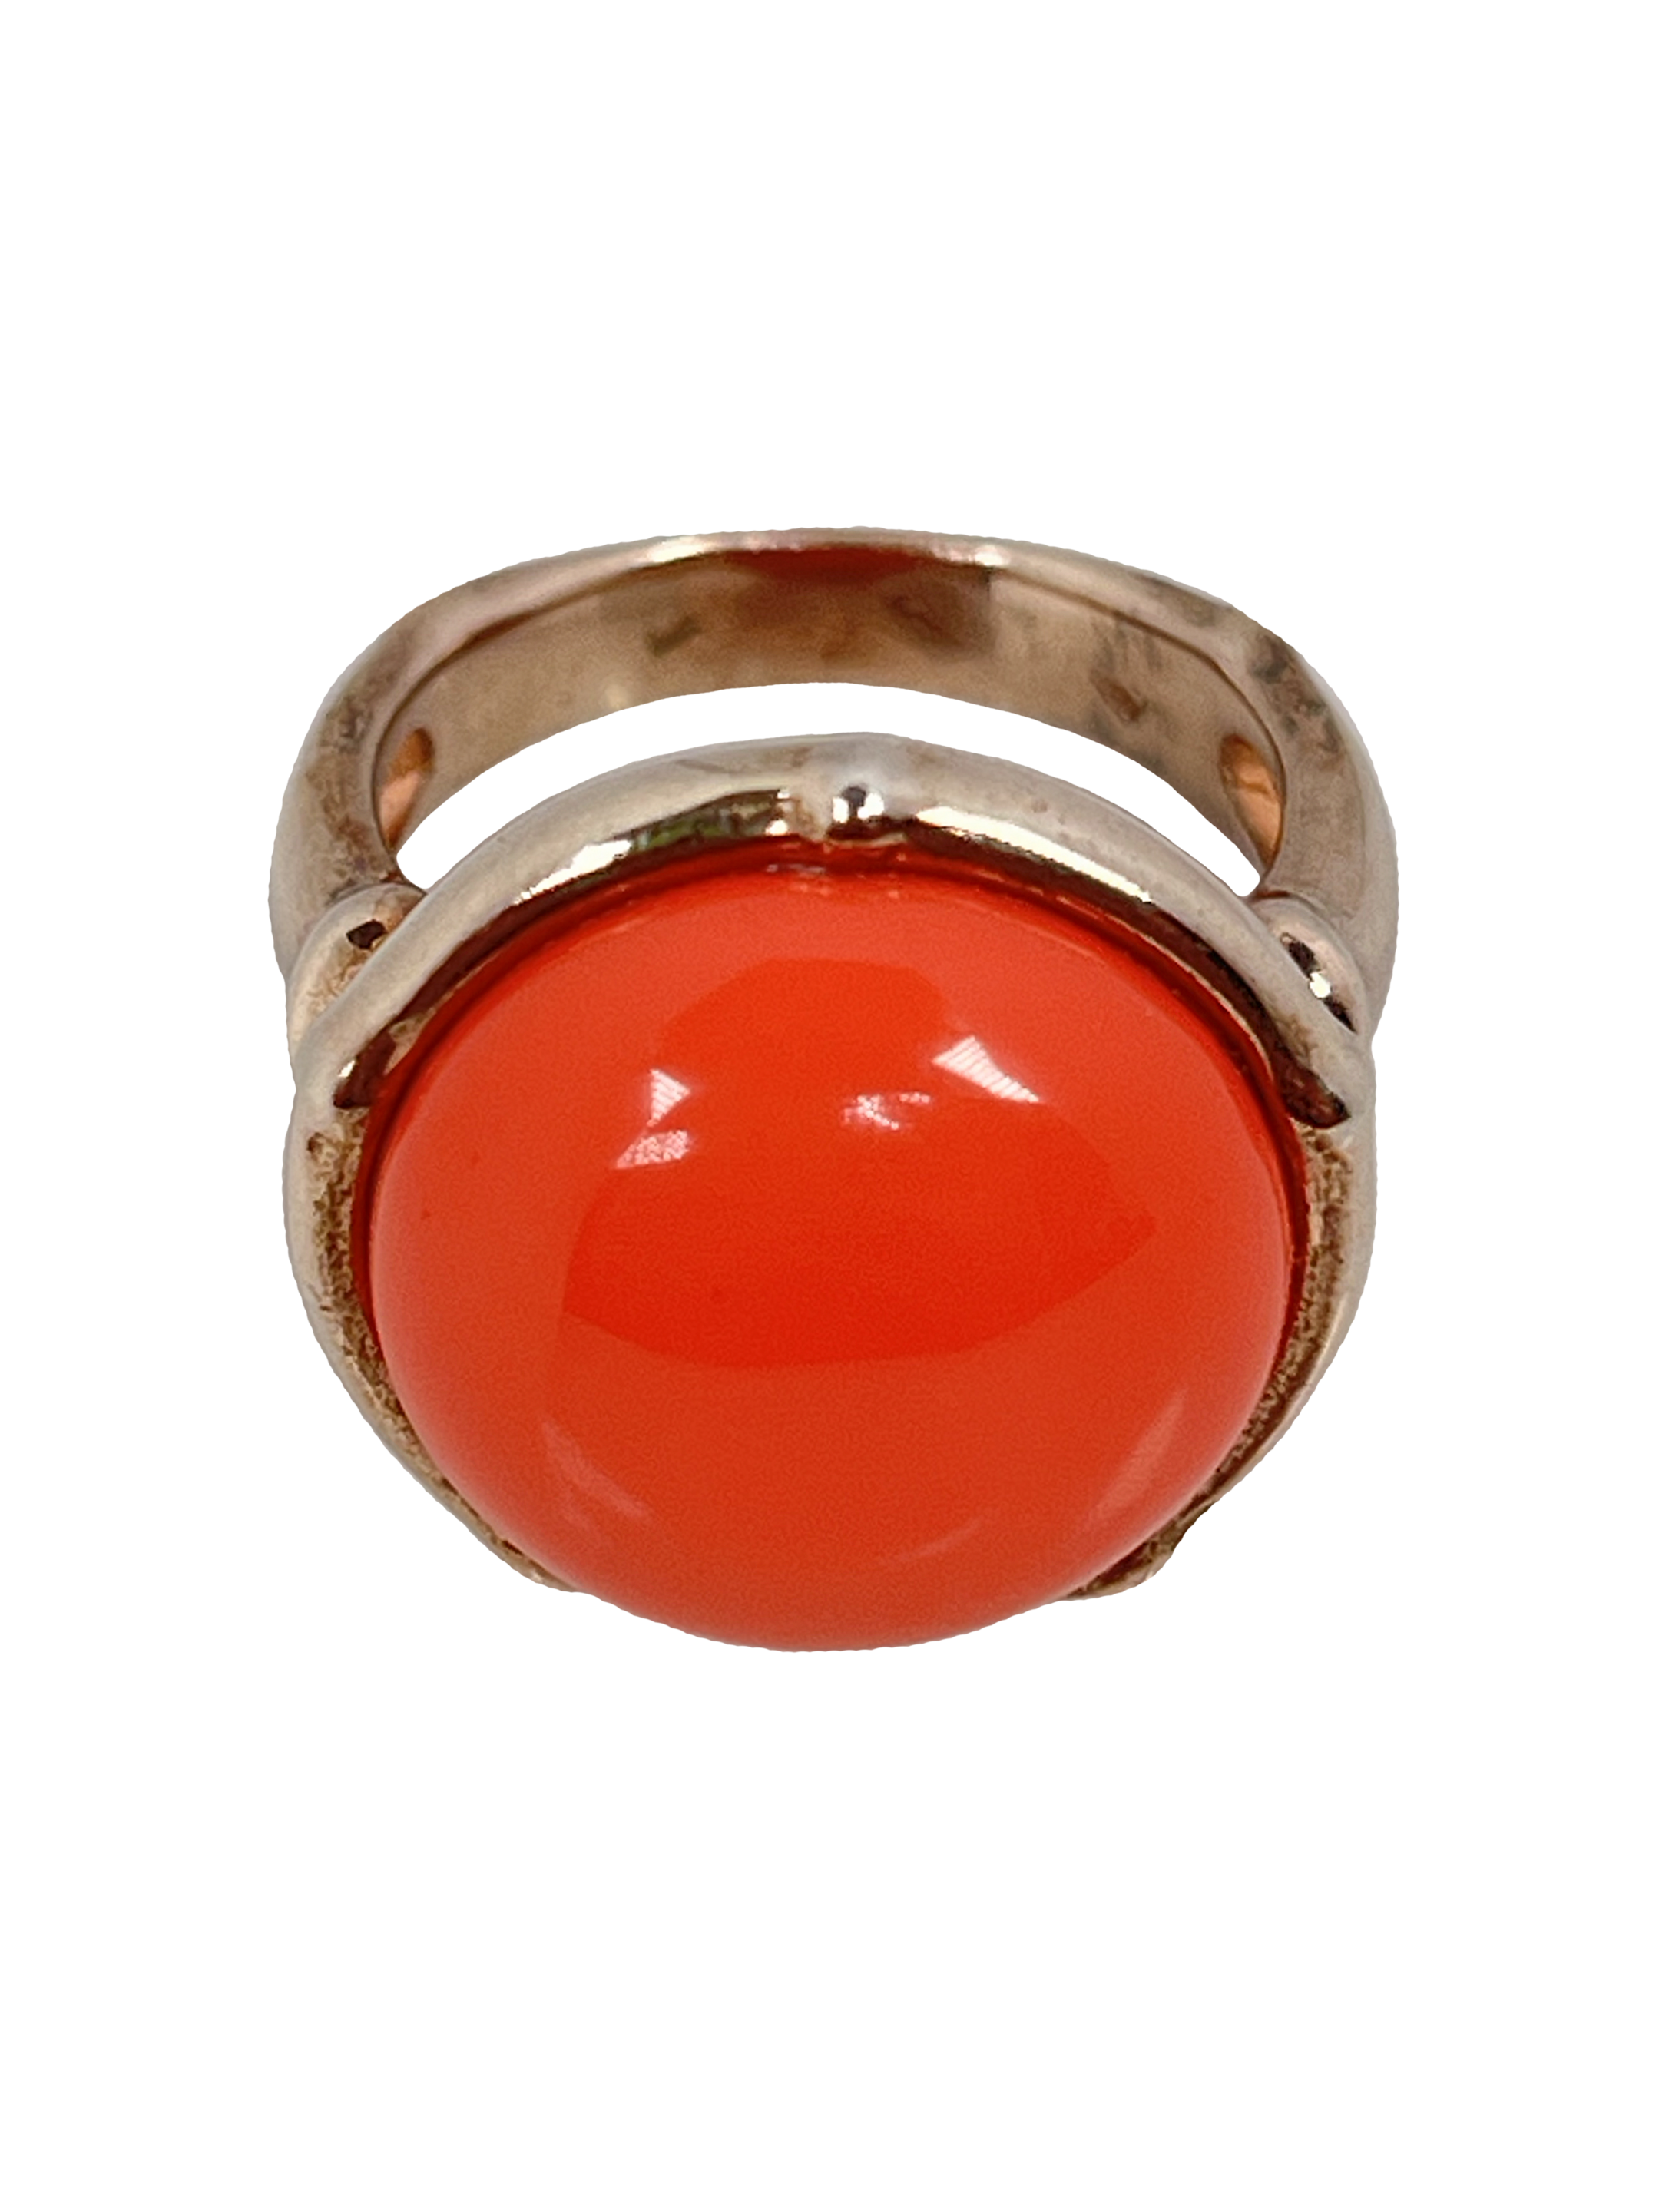 Ασημένιο δαχτυλίδι με επεξεργασία επιφάνειας και πέτρα πορτοκαλιού